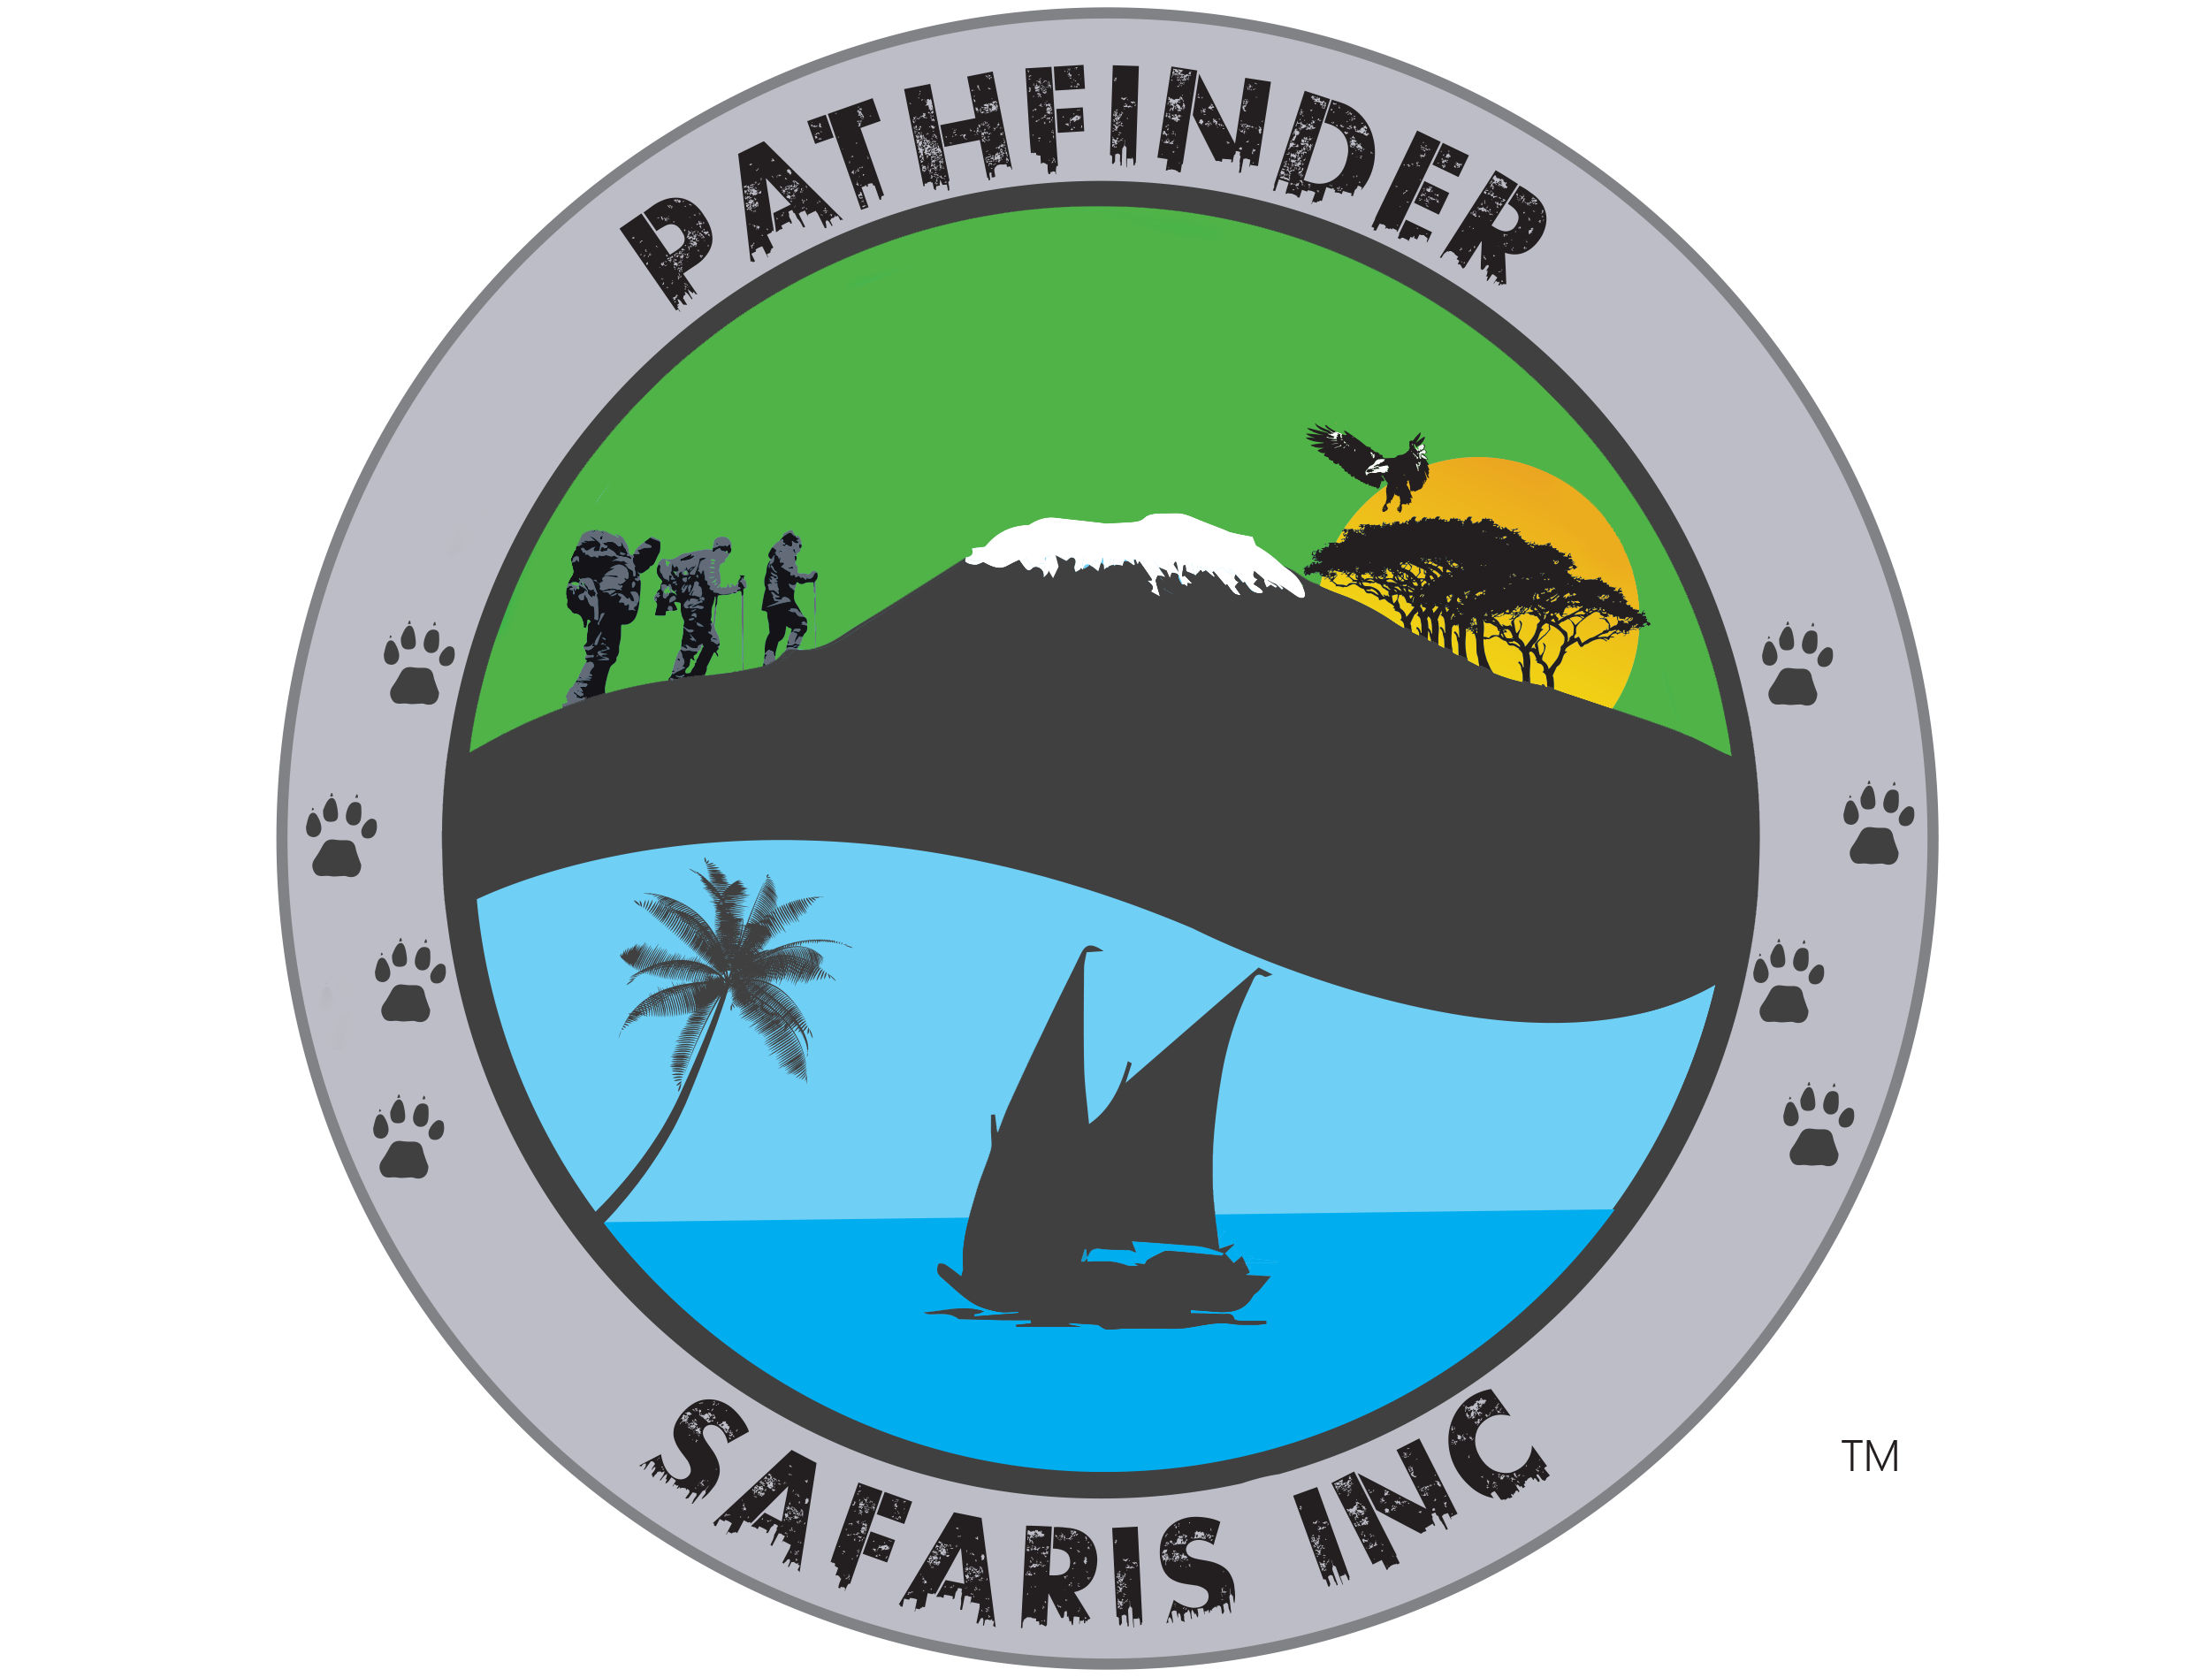 Pathfinder Safaris